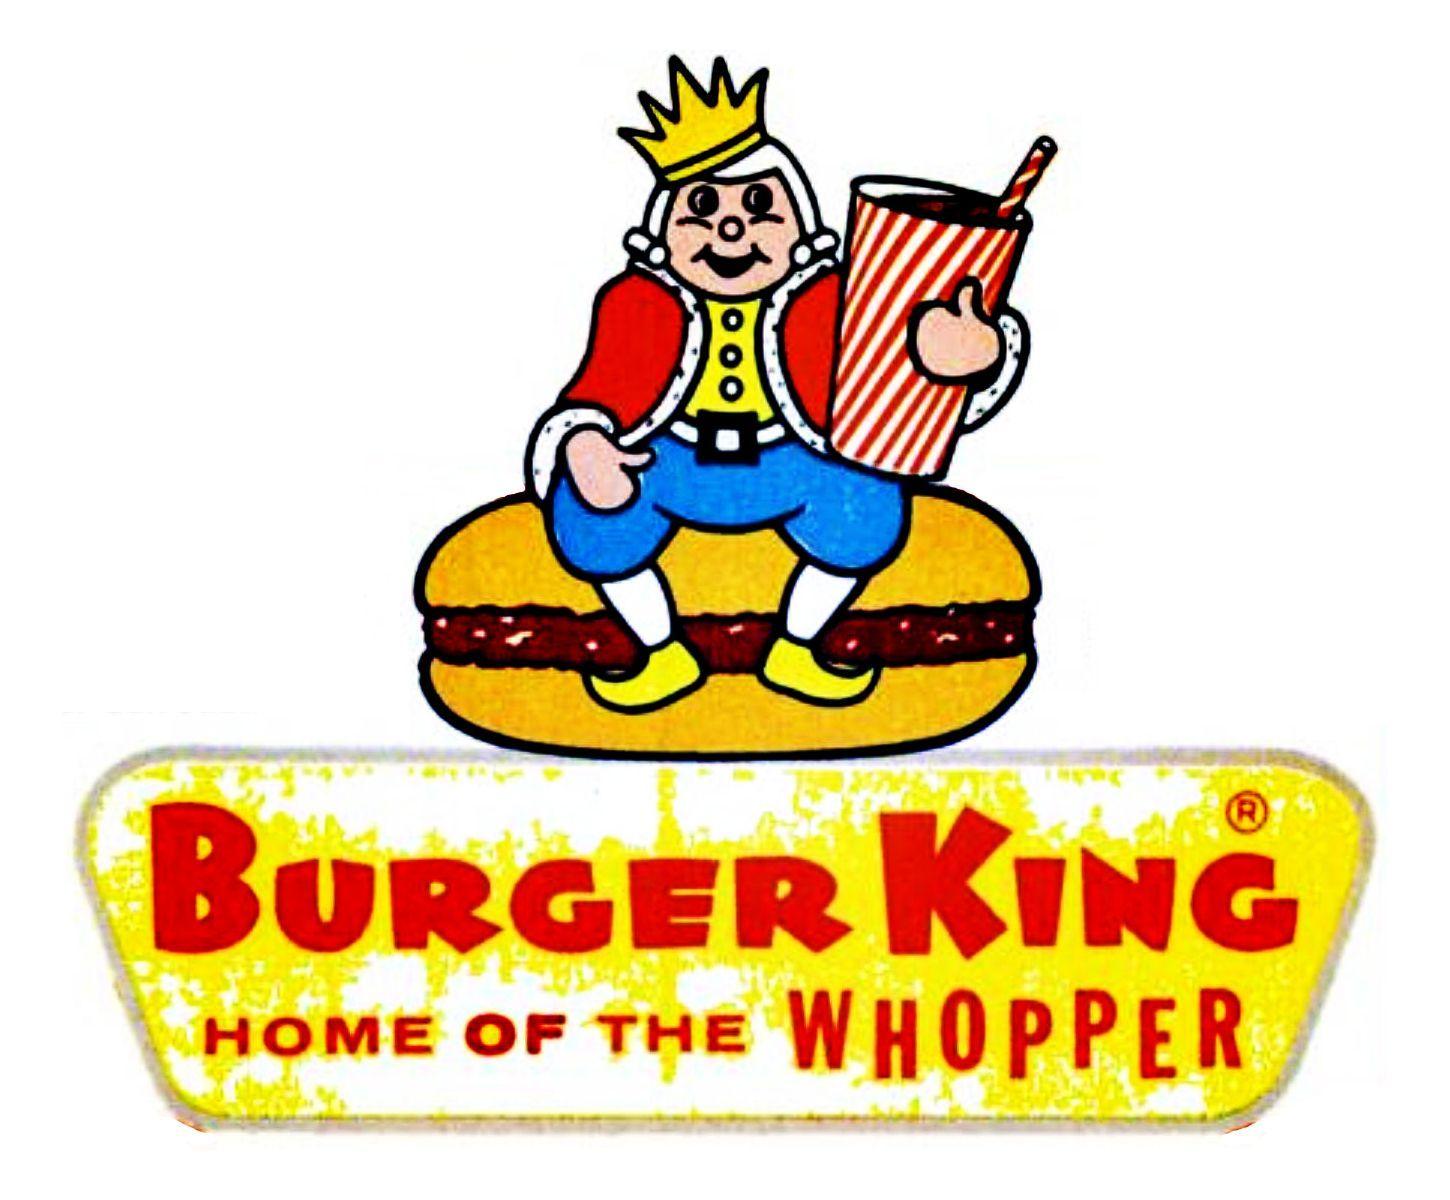 Old Burger King Logo - old burger king logo | All logos world | Logos, Vintage ads, Vintage